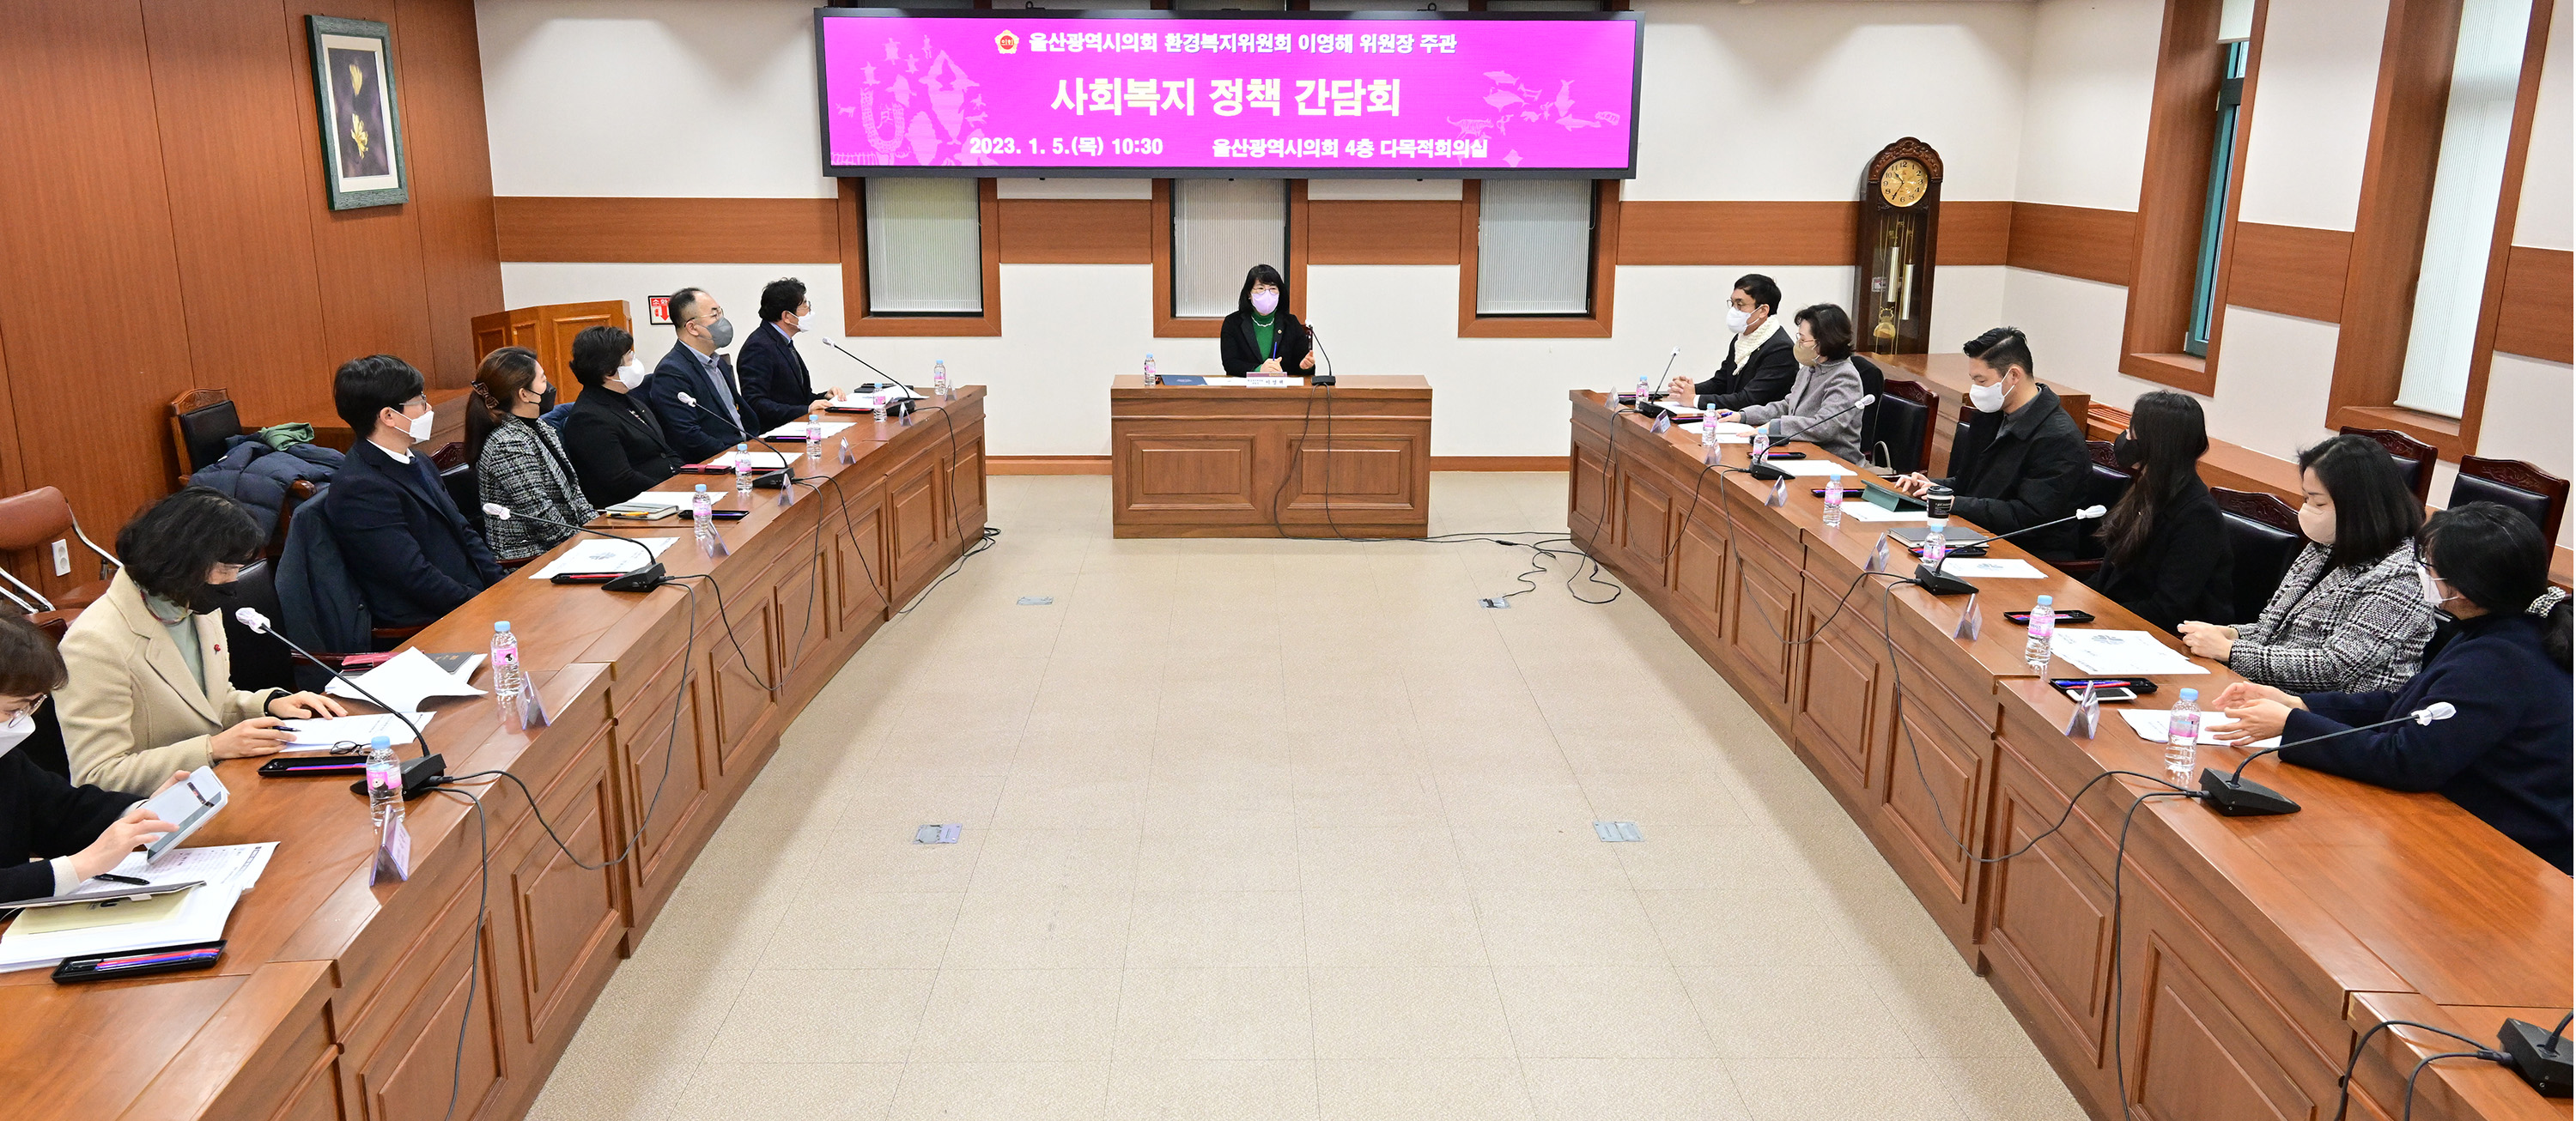 이영해 환경복지위원장, 사회복지 정책 간담회4